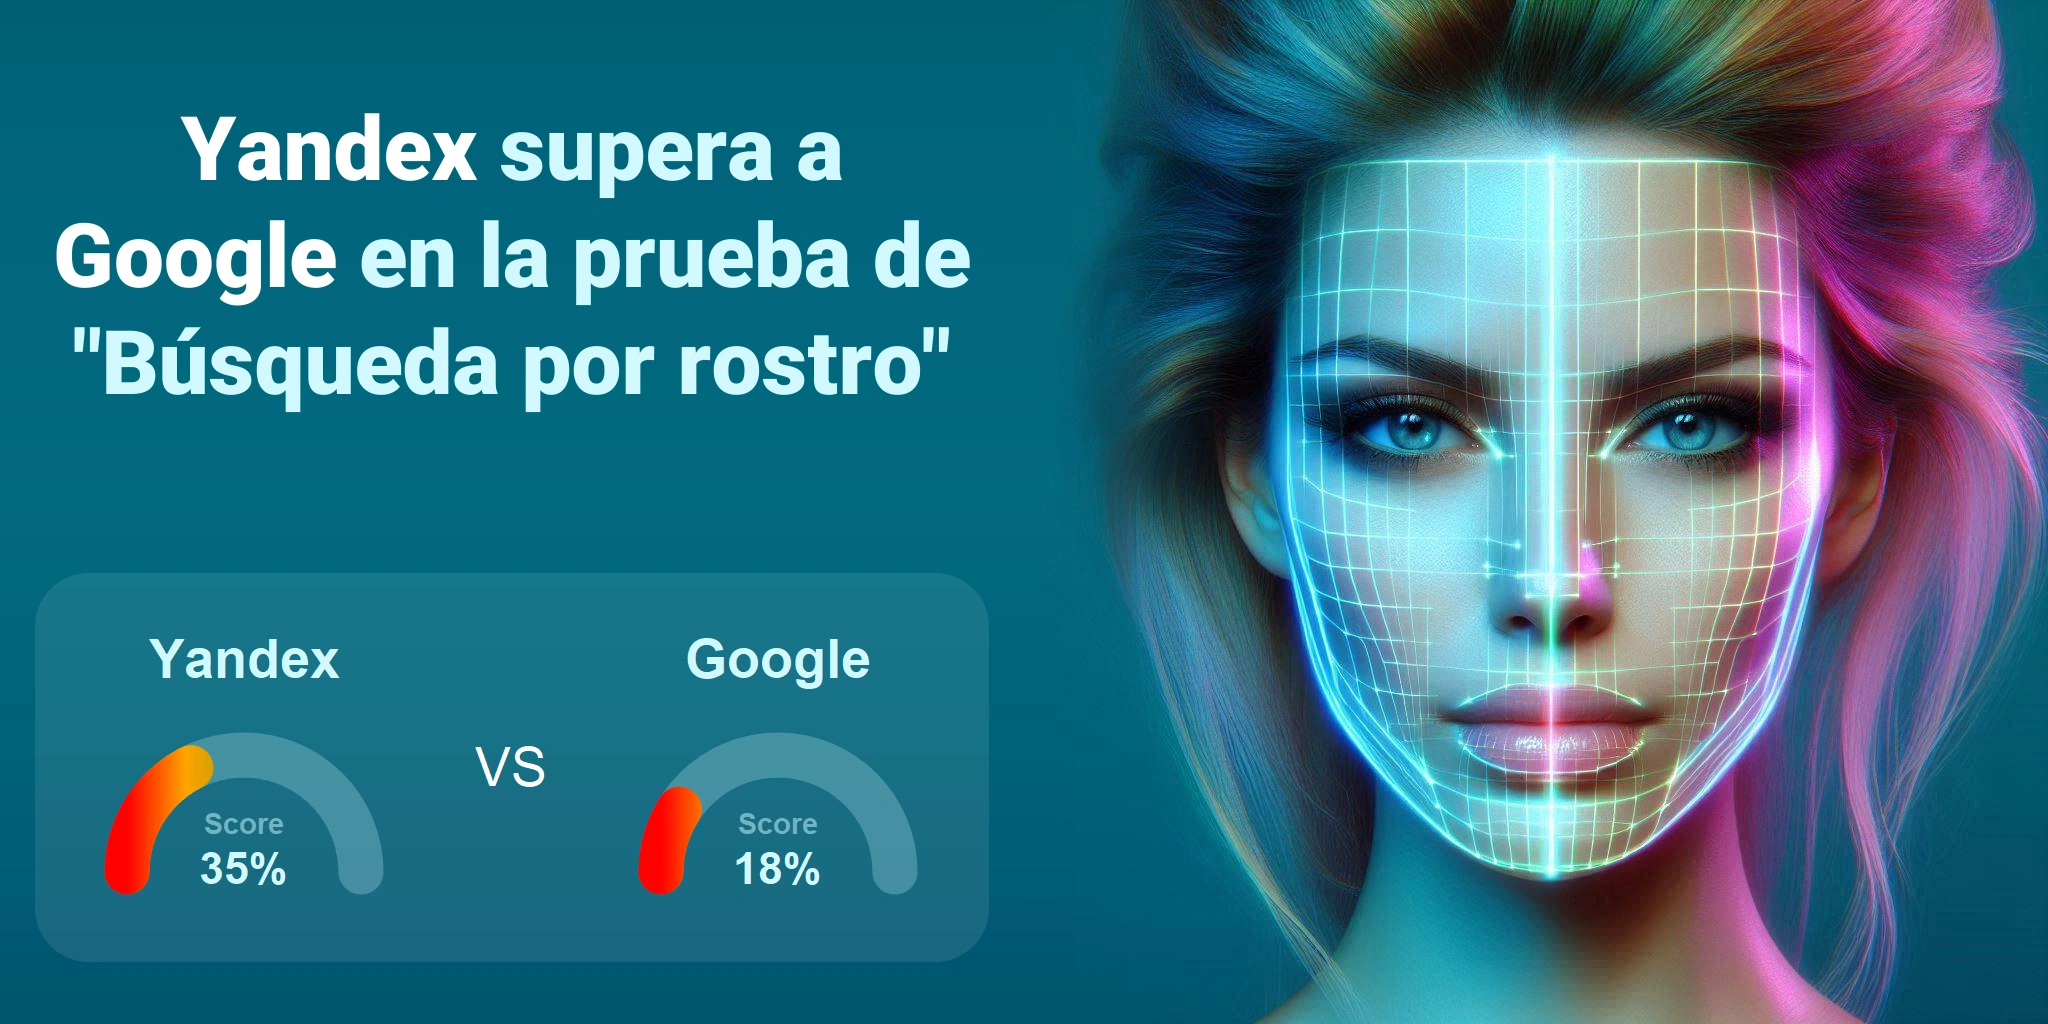 ¿Cuál es mejor para la búsqueda facial: <br>Google o Yandex?